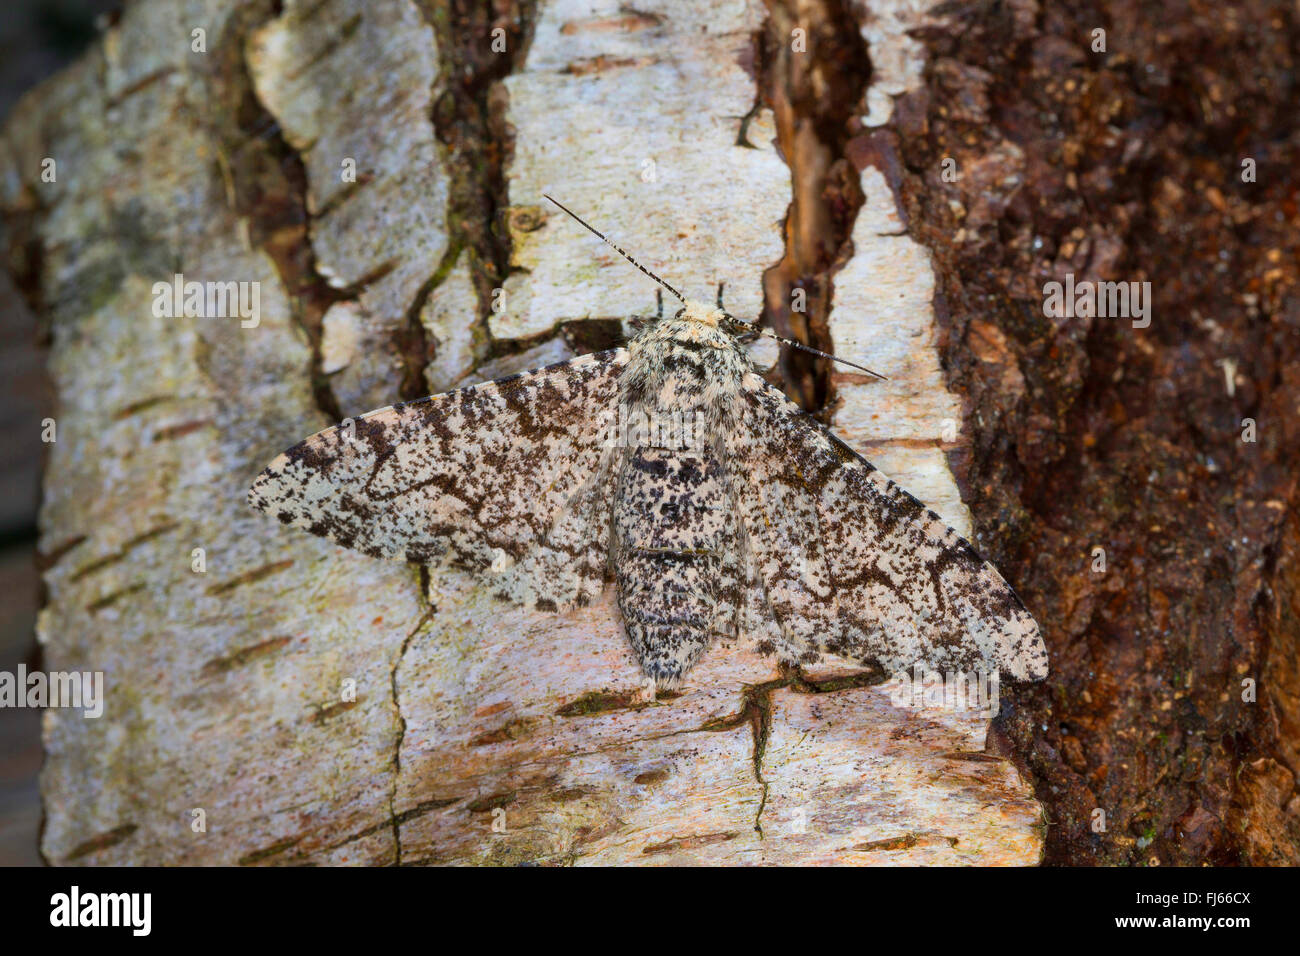 Truffée d'amphibien (Biston betularia Biston, betularius Amphidasis, betularia), à corps blanc parsemé d'amphibien dans un tronc de bouleau, Allemagne Banque D'Images